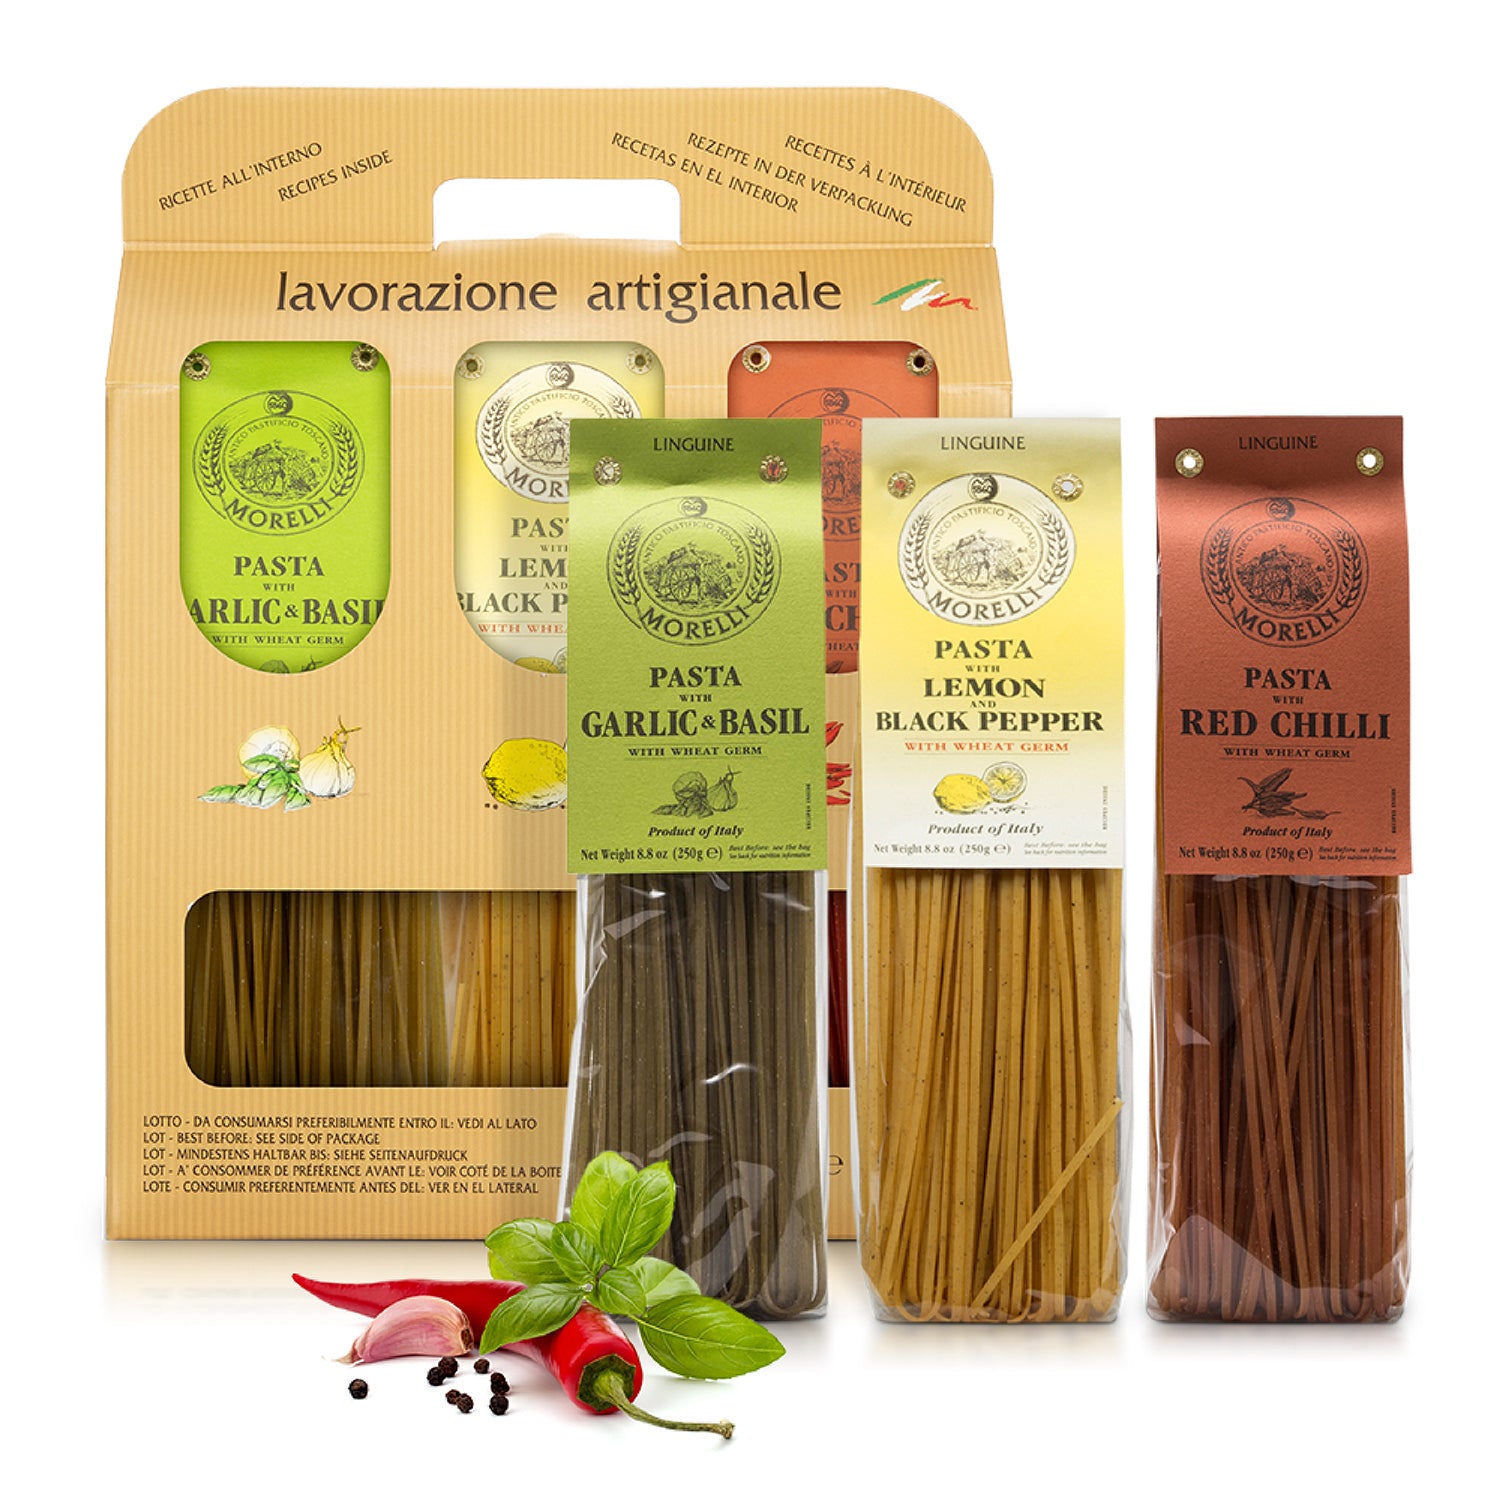 Morelli Tri Colored Linguine Pasta